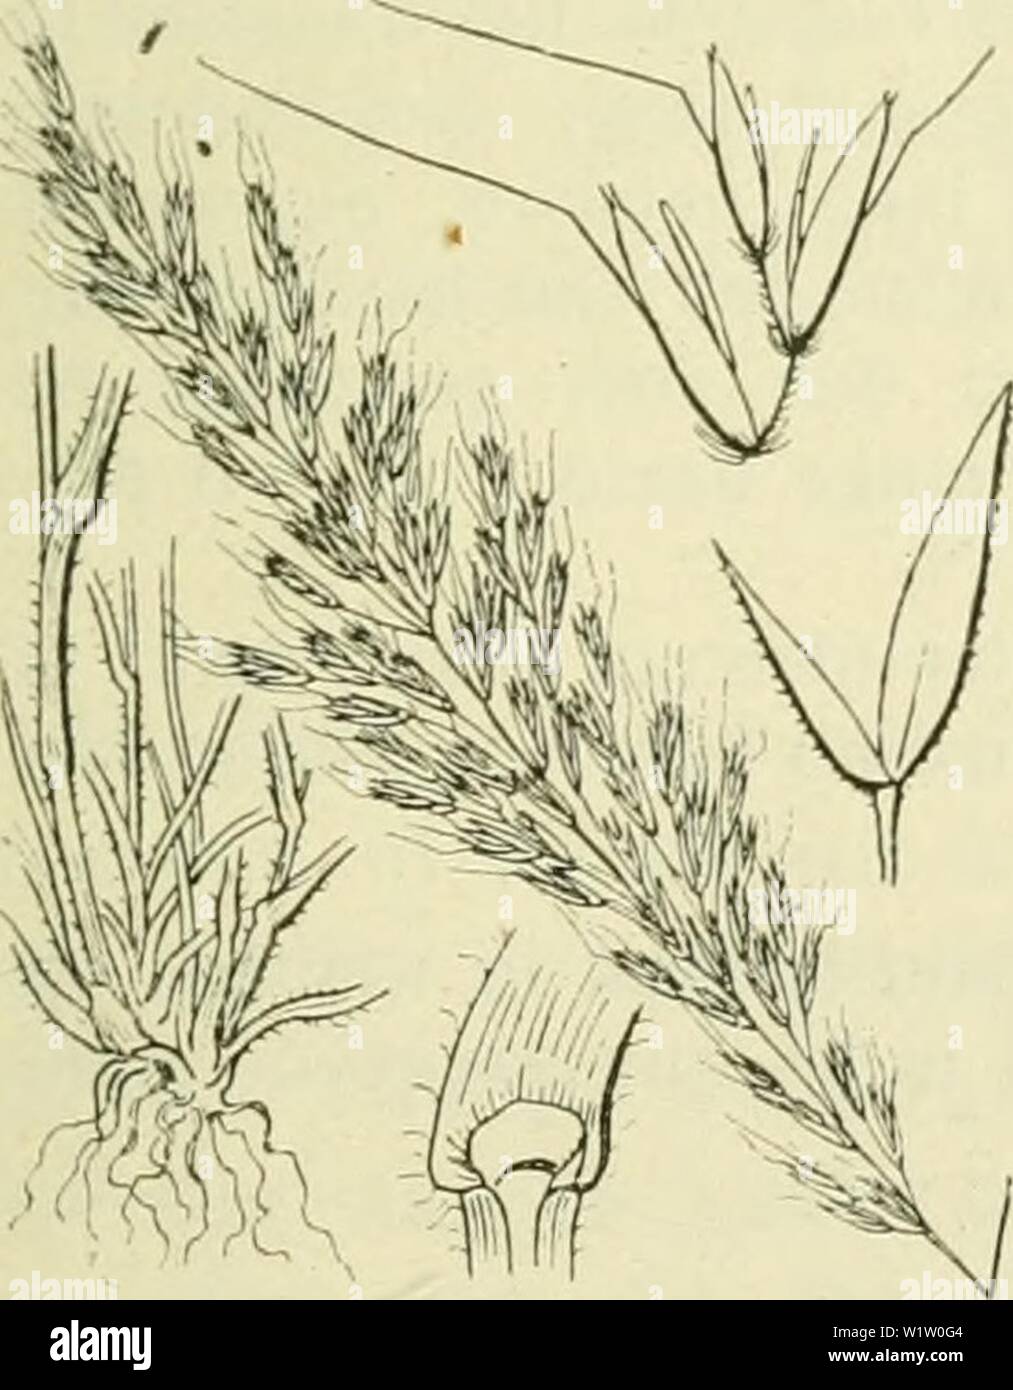 Archive image from page 538 of De flora van Nederland (1909-11). De flora van Nederland  defloravannederl01heuk Year: 1909-11. Avena pratensis Fig. 431. Deze soort is (Trisétum'-) flavéscens P. B.) Goud haver (fig. 432). grasgroen. Zij heeft een kruipenden wortelstok en 1 of eenige stengeis, waaronder niet-bloeiende loten (zij vormt losse zoden). De stengels zijn rechtop- staand of aan den voet geknikt, in de knoopen of iets daaronder vaak met rugwaarts gerichte haren bezet, onder de pluim meest geheel kaal. De bla- den zijn vrij smal en vlak, in de jeugd opgerold, met een meest door dunne zac Stock Photo